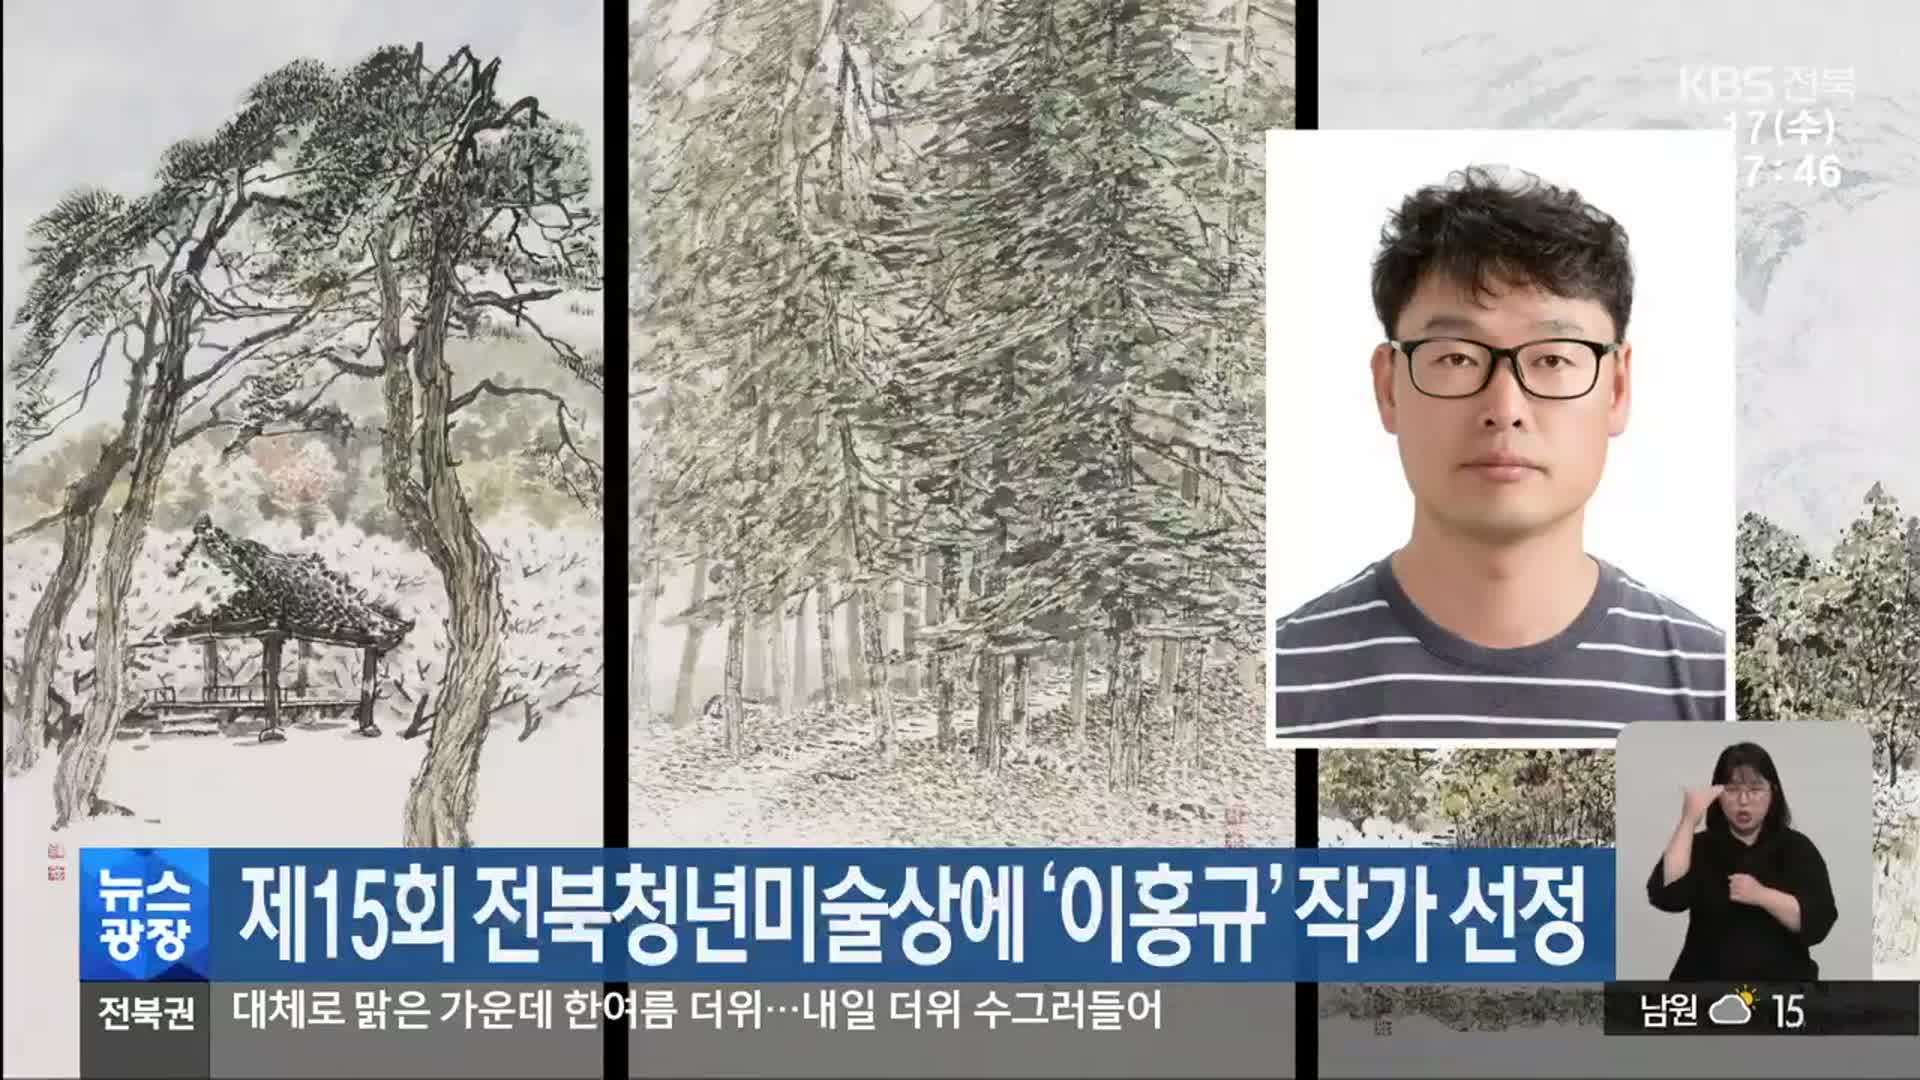 제15회 전북청년미술상에 ‘이홍규’ 작가 선정